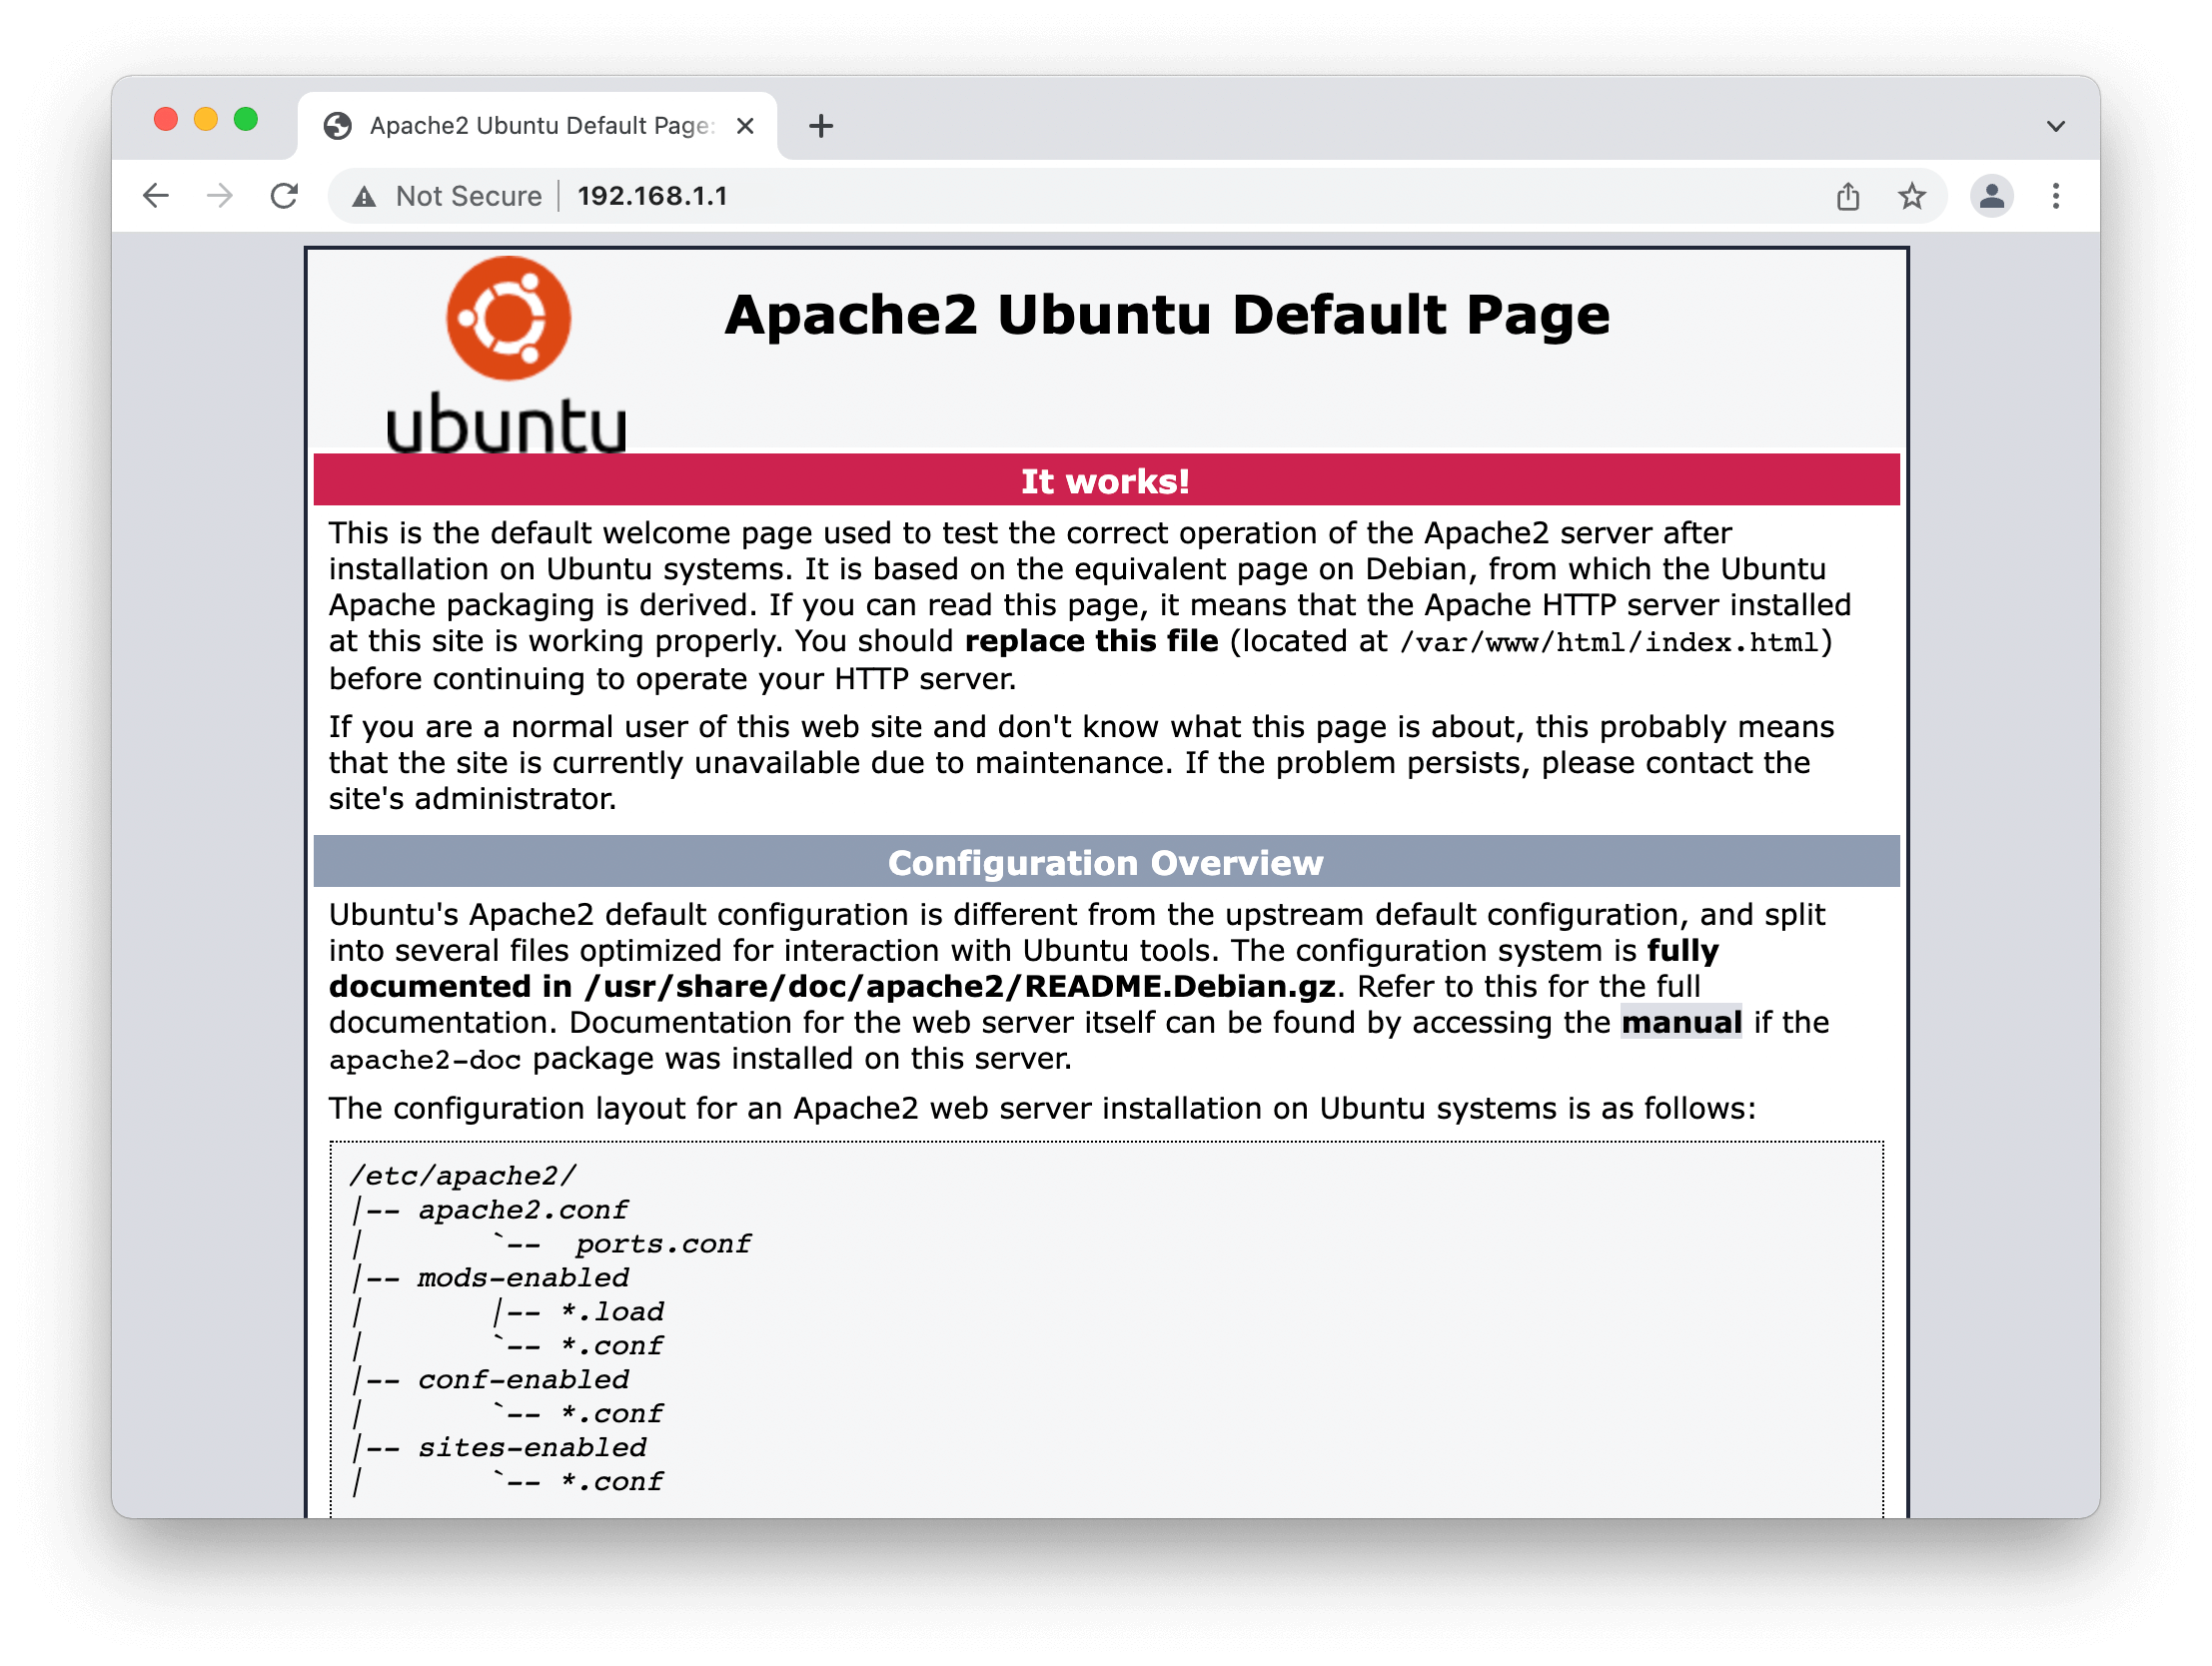 Defualt Apache2 landing page